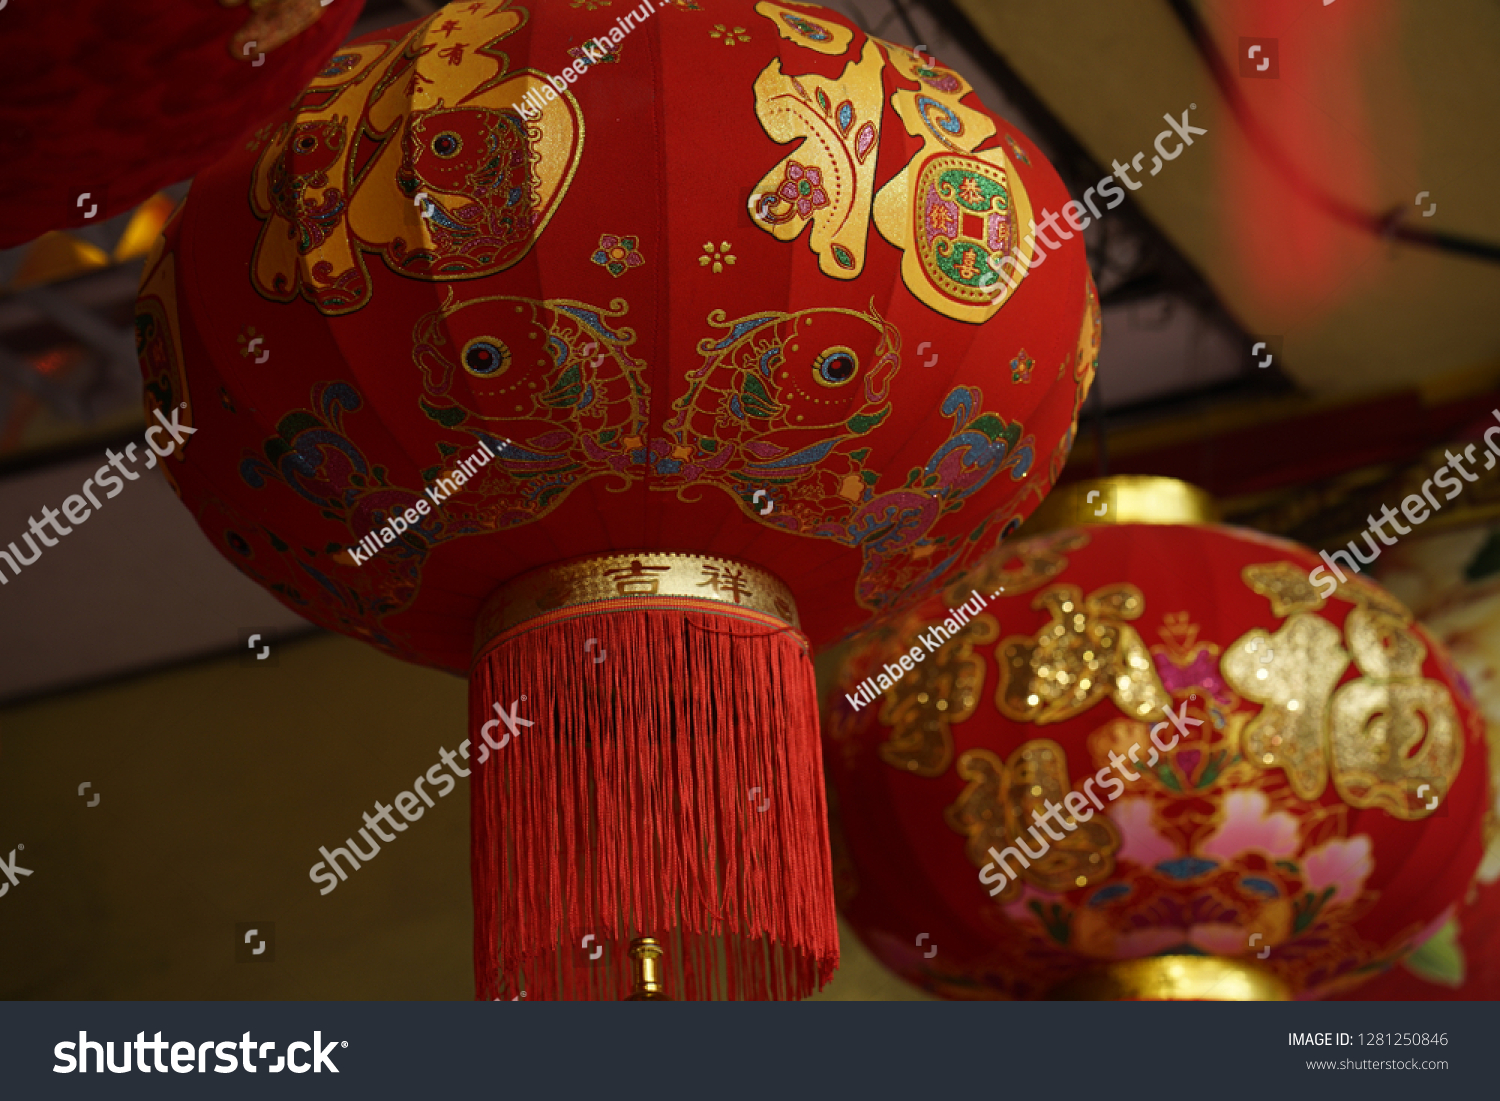 Chinese Lantern or sky lantern or kongming hanging outside #1281250846